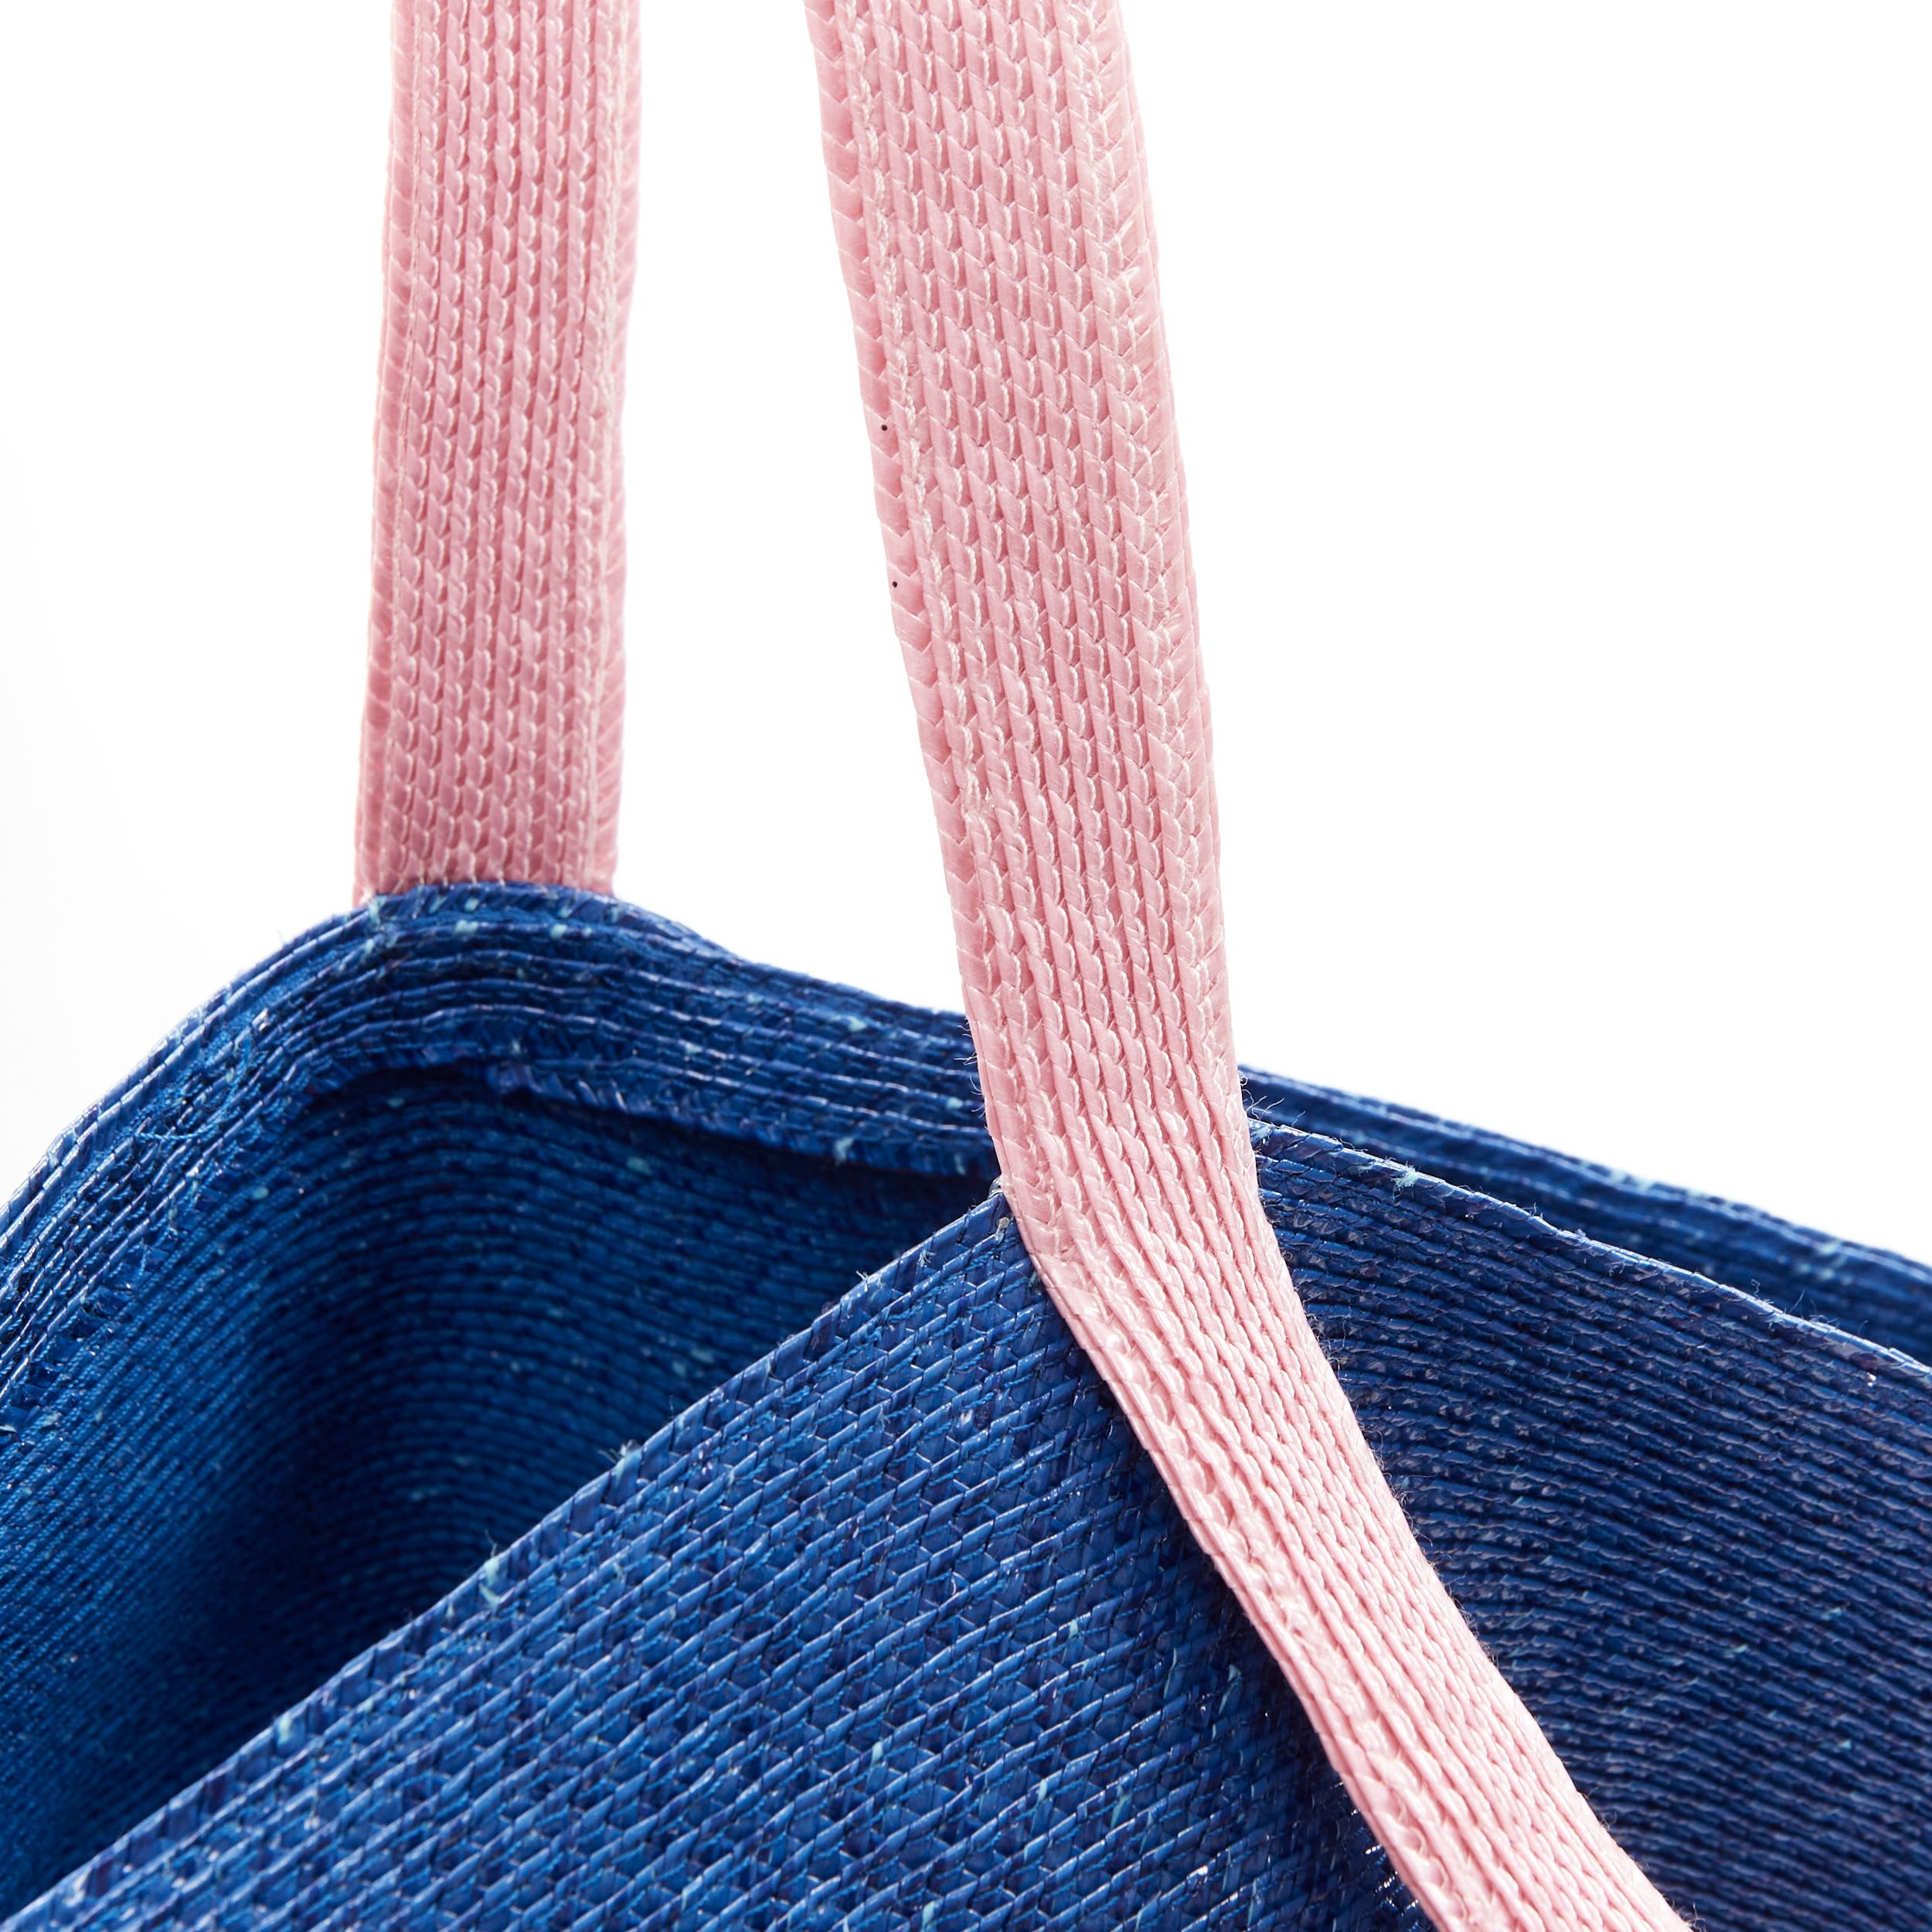 new ROSIE ASSOULIN Jug sculptural pink blue flared raffia woven basket bag For Sale 5